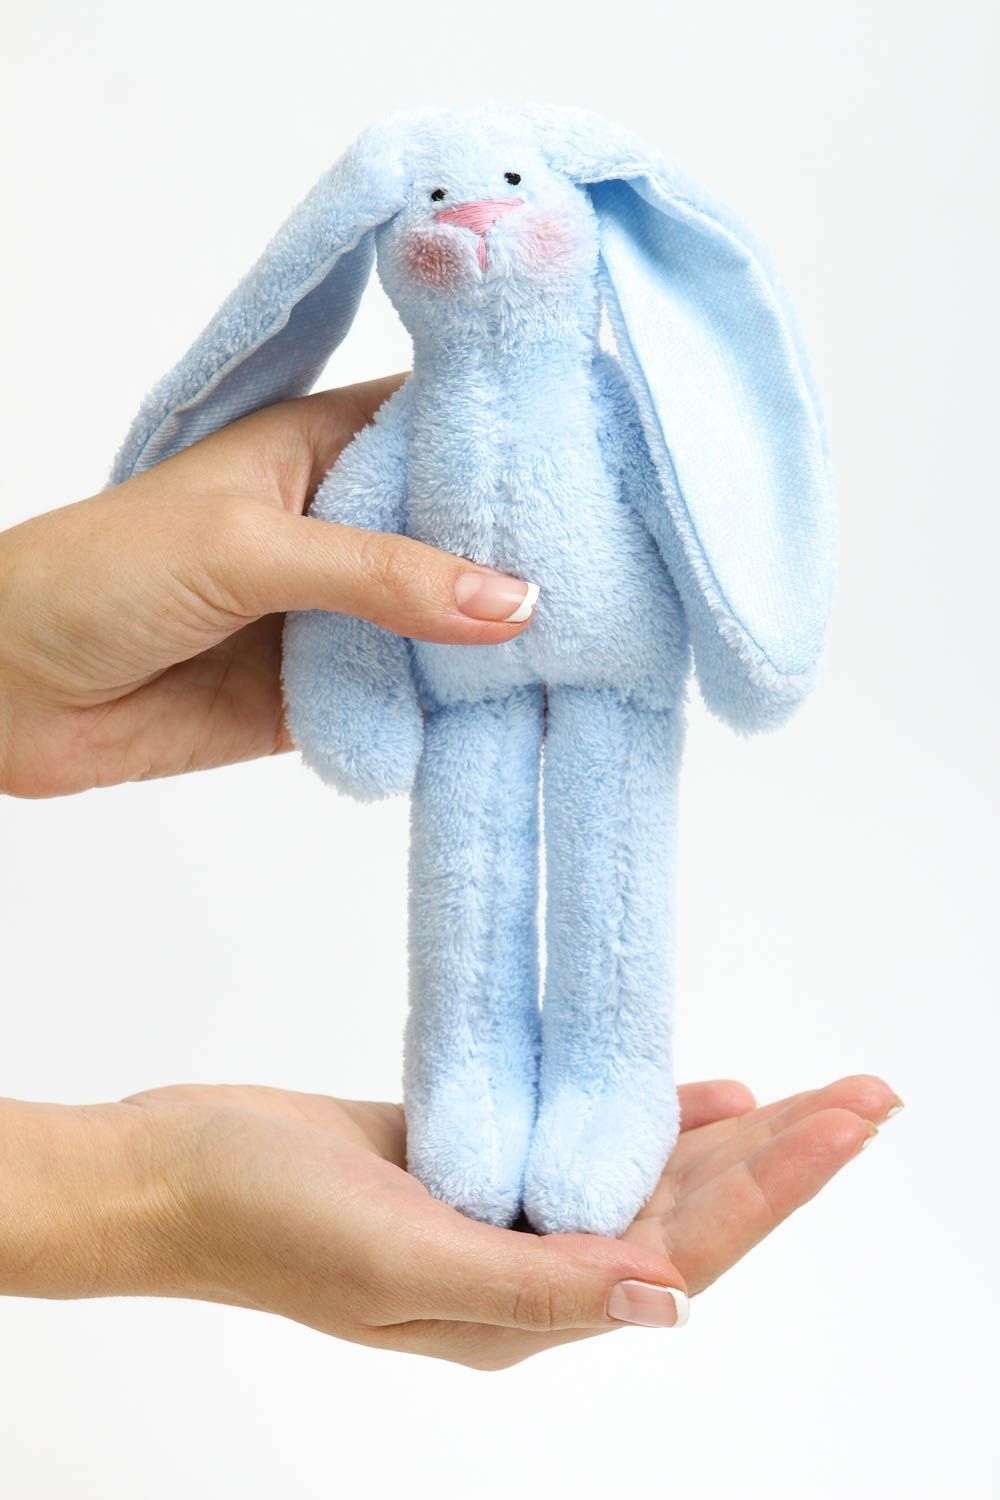 Игрушка заяц ручной работы детская игрушка из трикотажа голубая мягкая игрушка фото 4